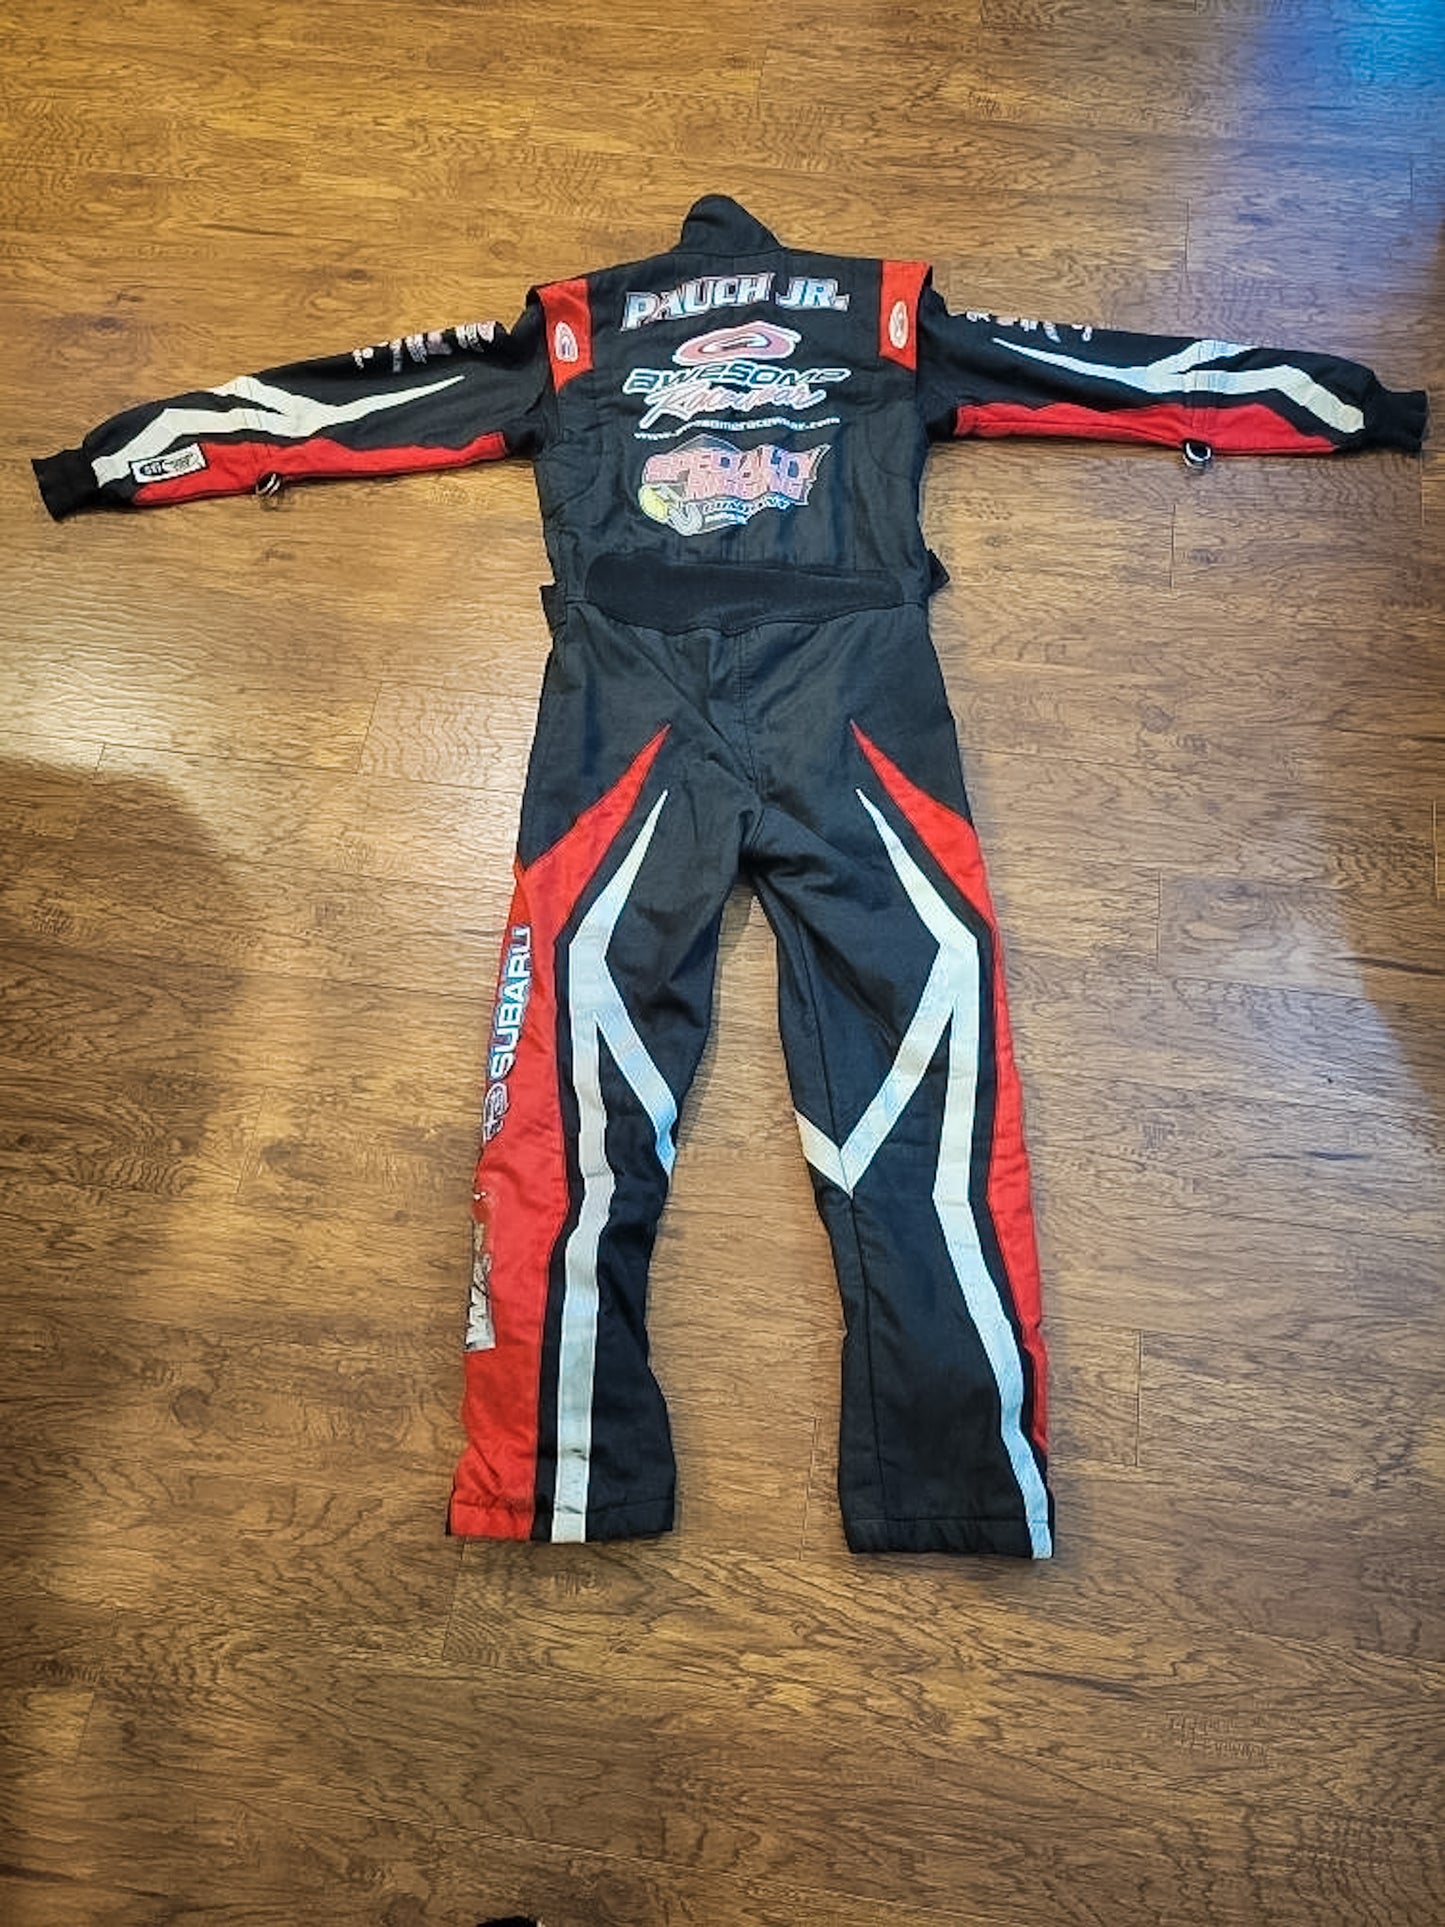 Pauch Jr Race Suit II